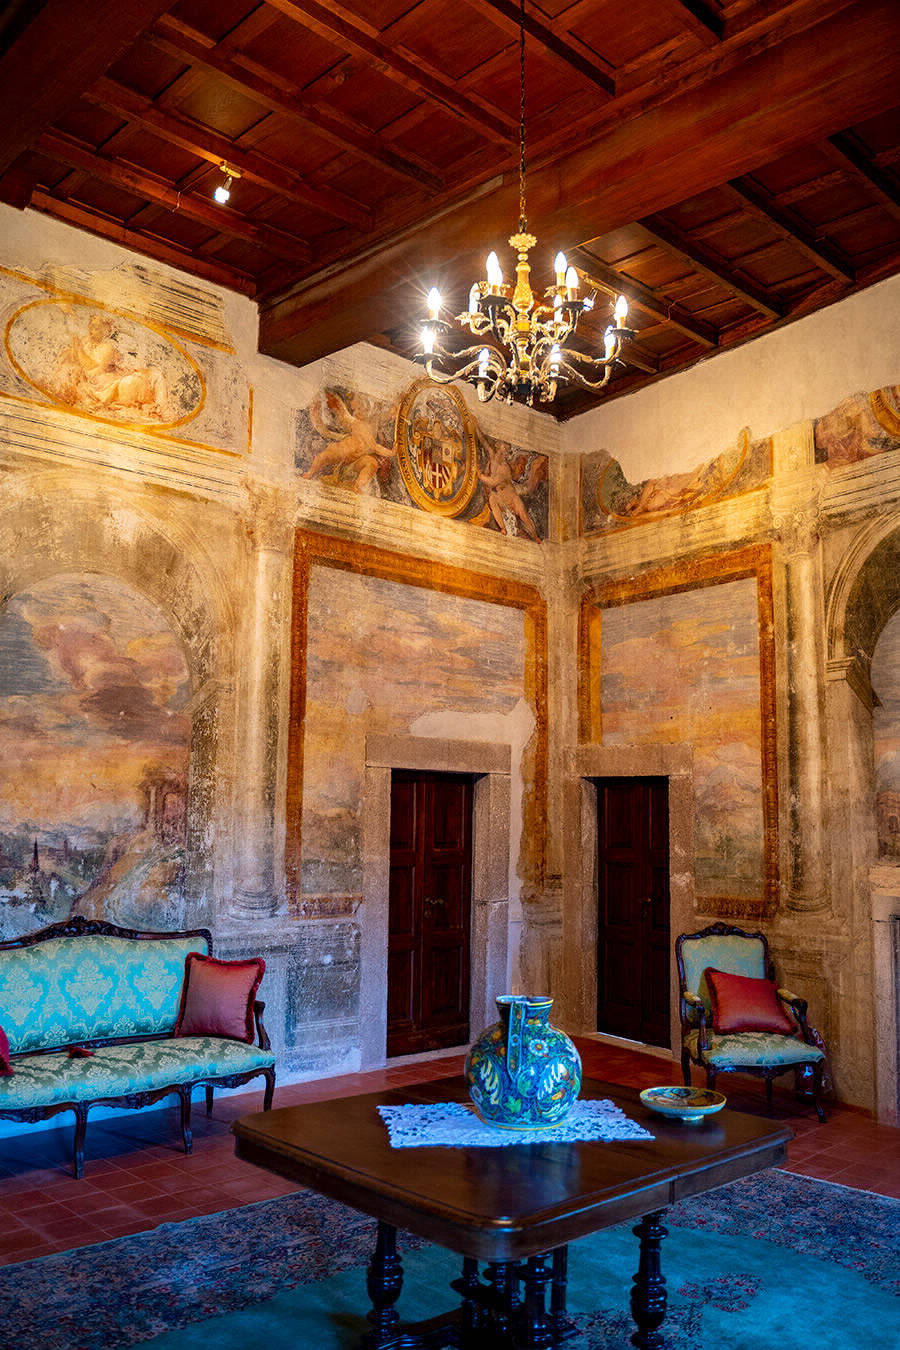 Panorama della sala delle quattro stagioni -Castello Orsini-Cesi -Borghese ospitalità, cultura al centro dell'antico borgo.